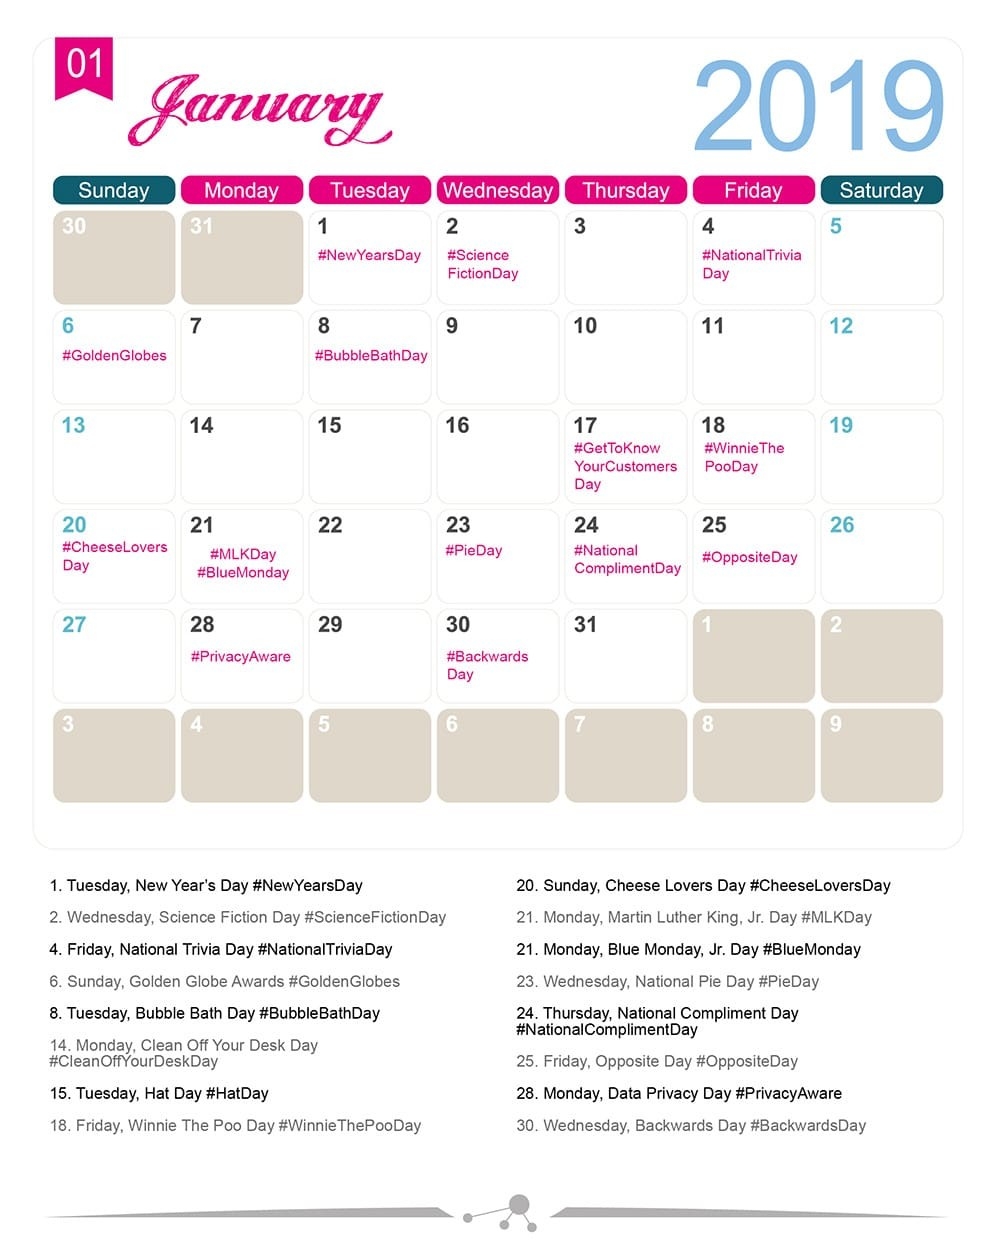 The 2019 Social Media Holiday Calendar - Make A Website Hub-Monthly Health Awareness Calendar 2020